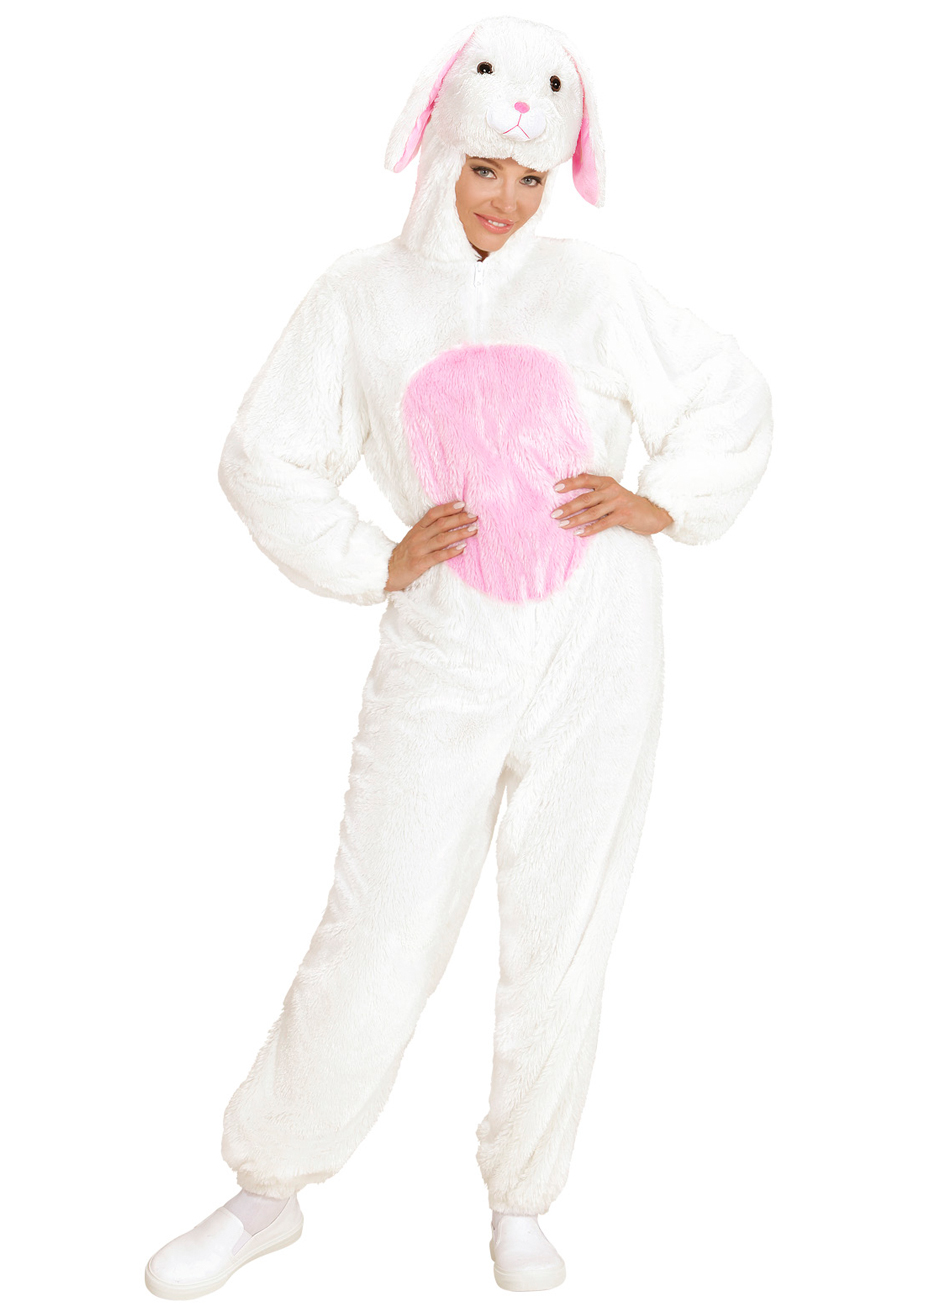 Déguisement lapin blanc, adulte, mixte (costume, gants, pattes, masque)  chez DeguizFetes.